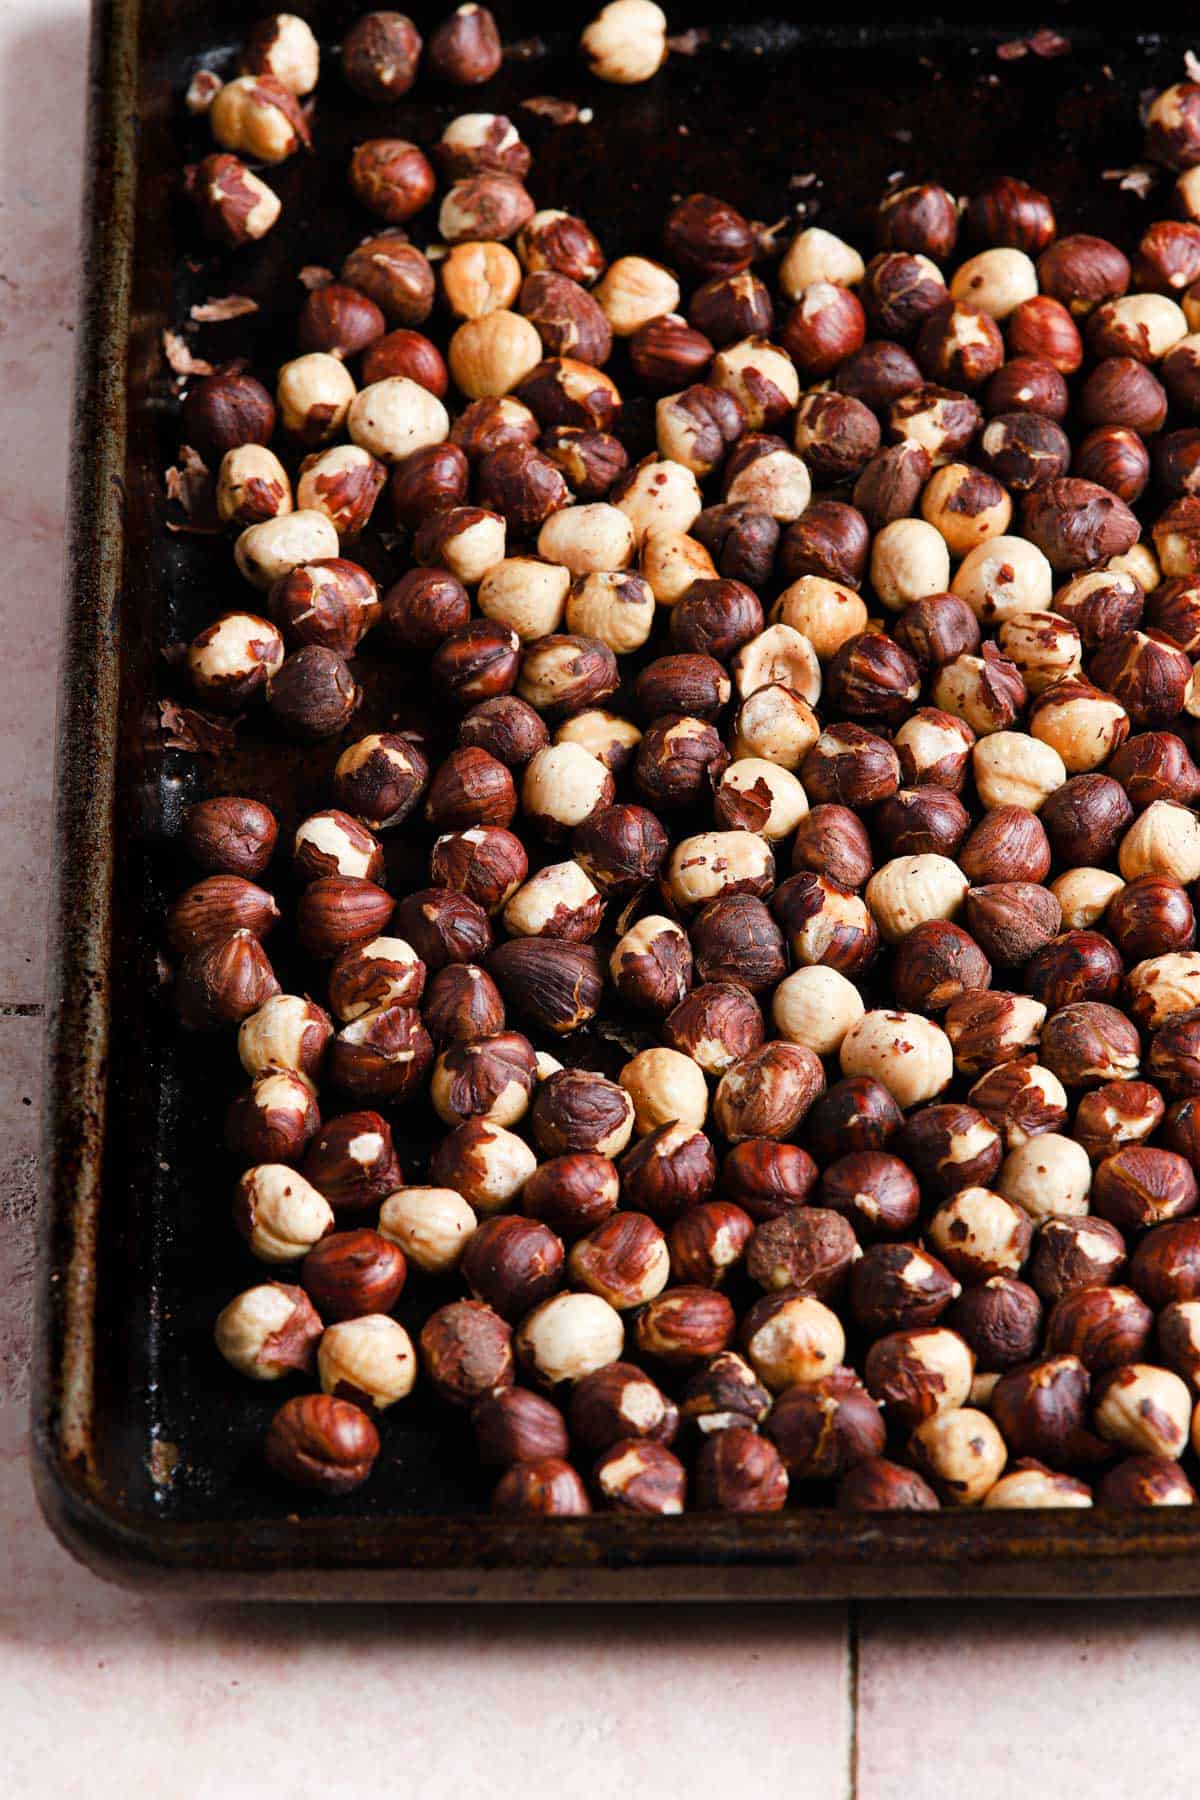 Roasted hazelnuts in a rimmed baking sheet